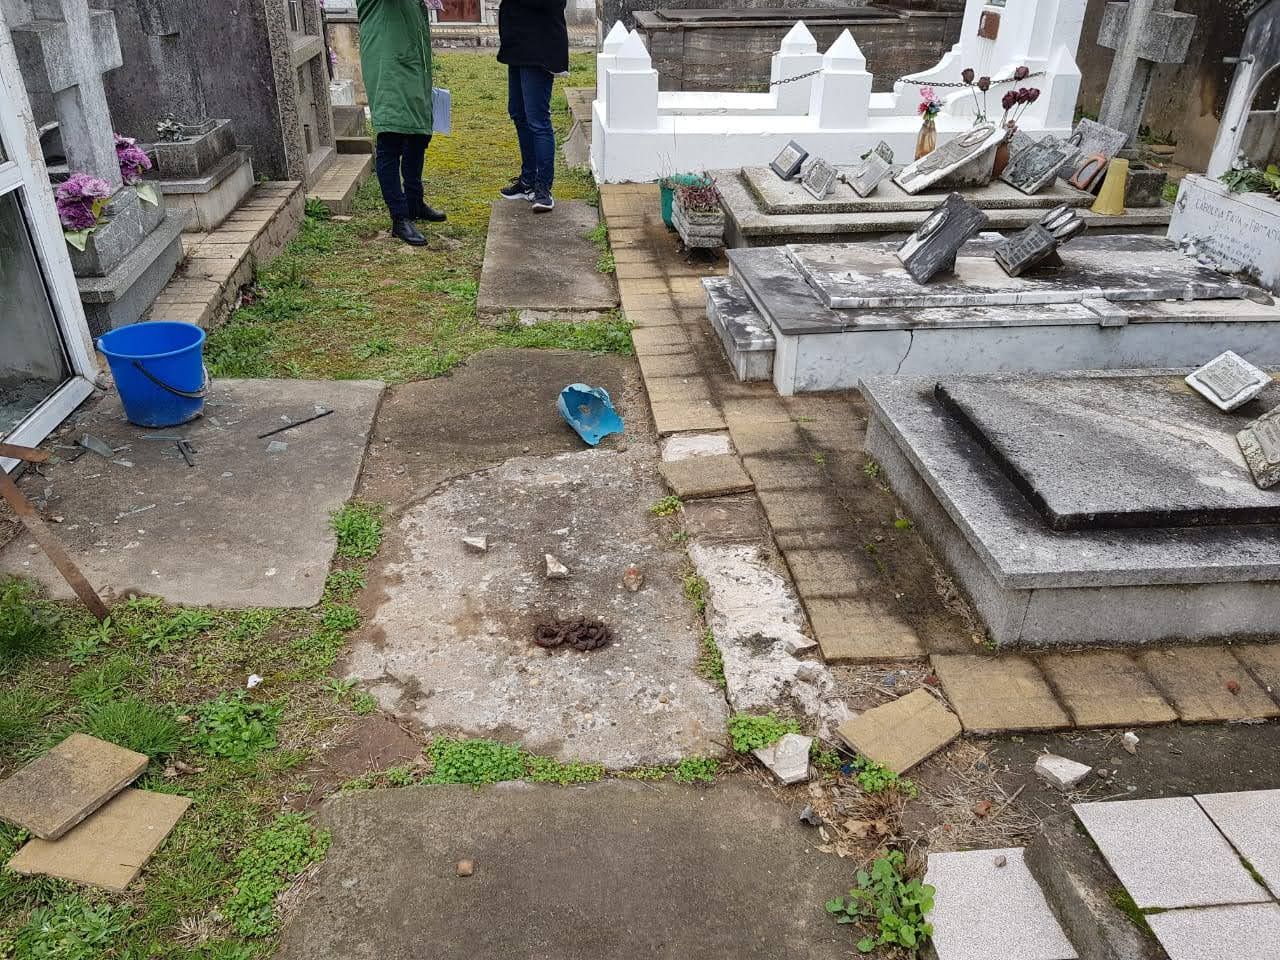 Seguridad privada para el Cementerio: hay un solo oferente y debe pasar por el Concejo